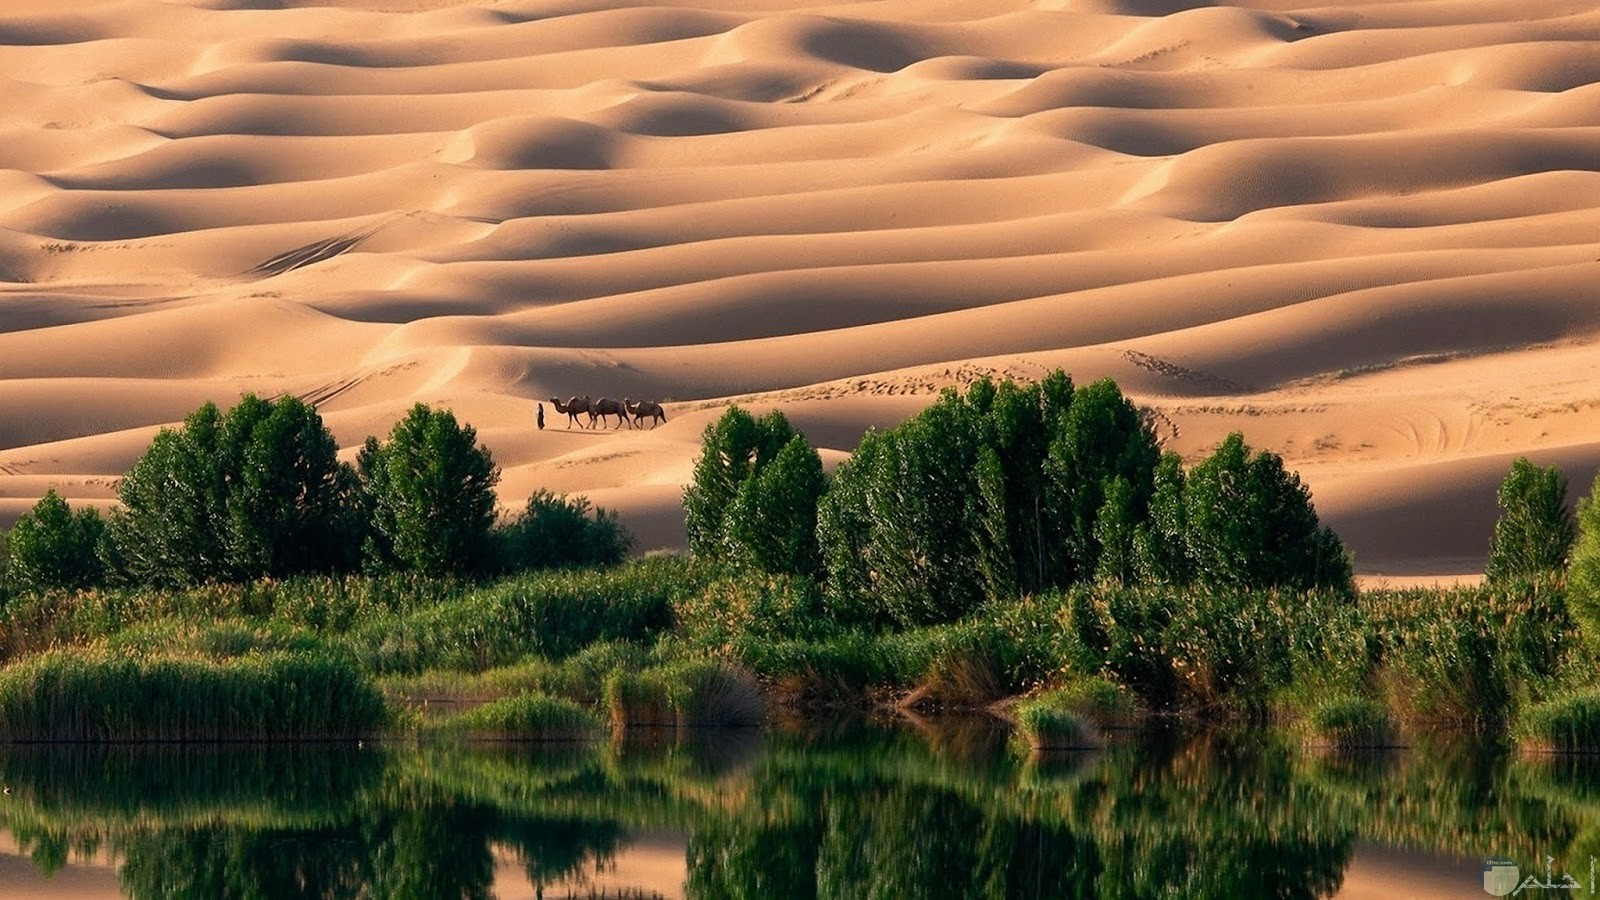 جمال الصحراء مع الطبيعة الخضراء و عيون الماء و الآبار العذبة.